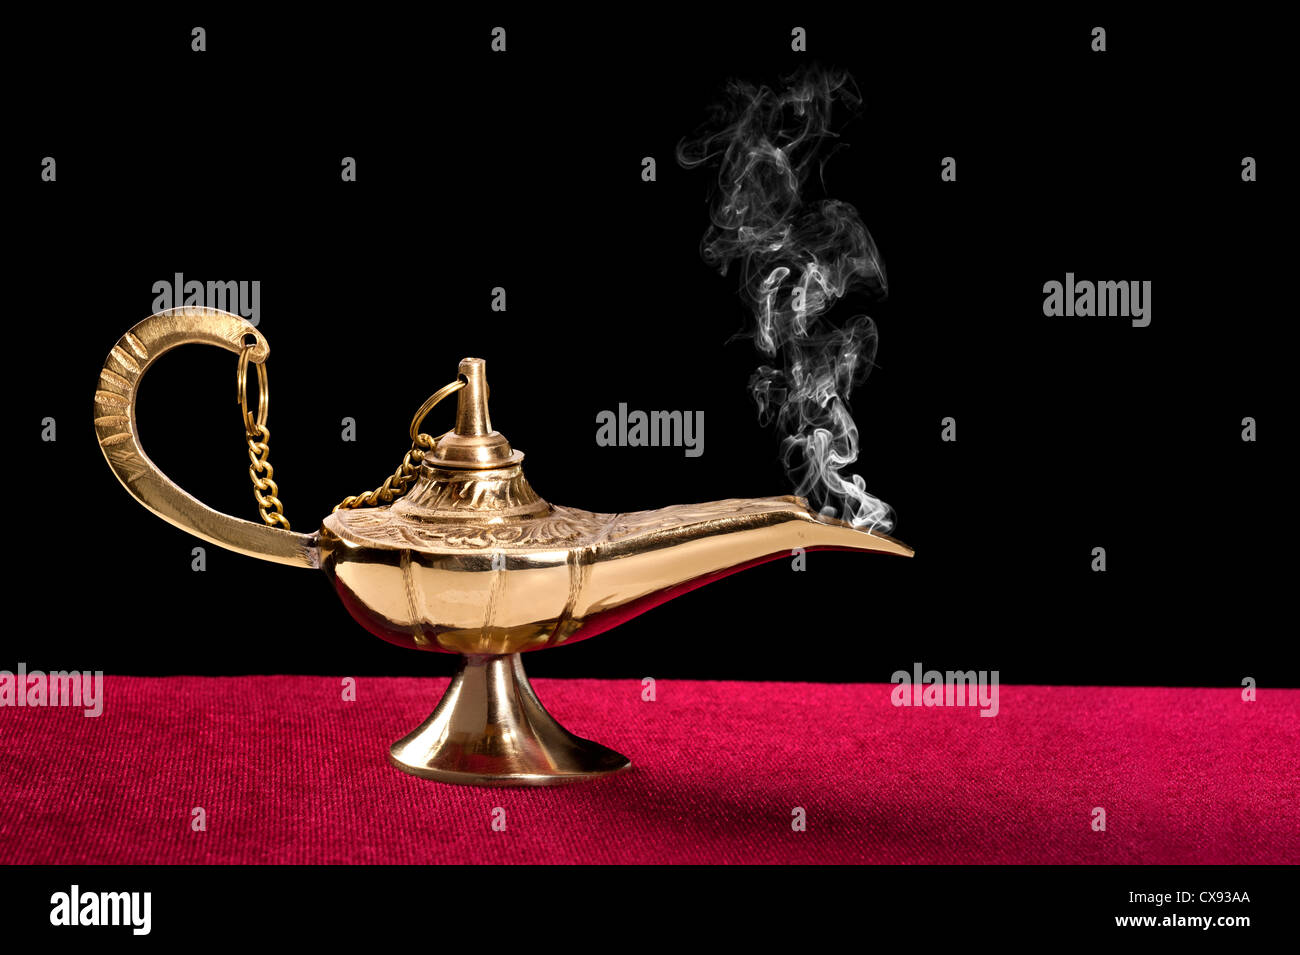 Une magie ancienne lampe sur un tableau de feutre rouge haut disperse un flot de fumée mystérieux. Banque D'Images